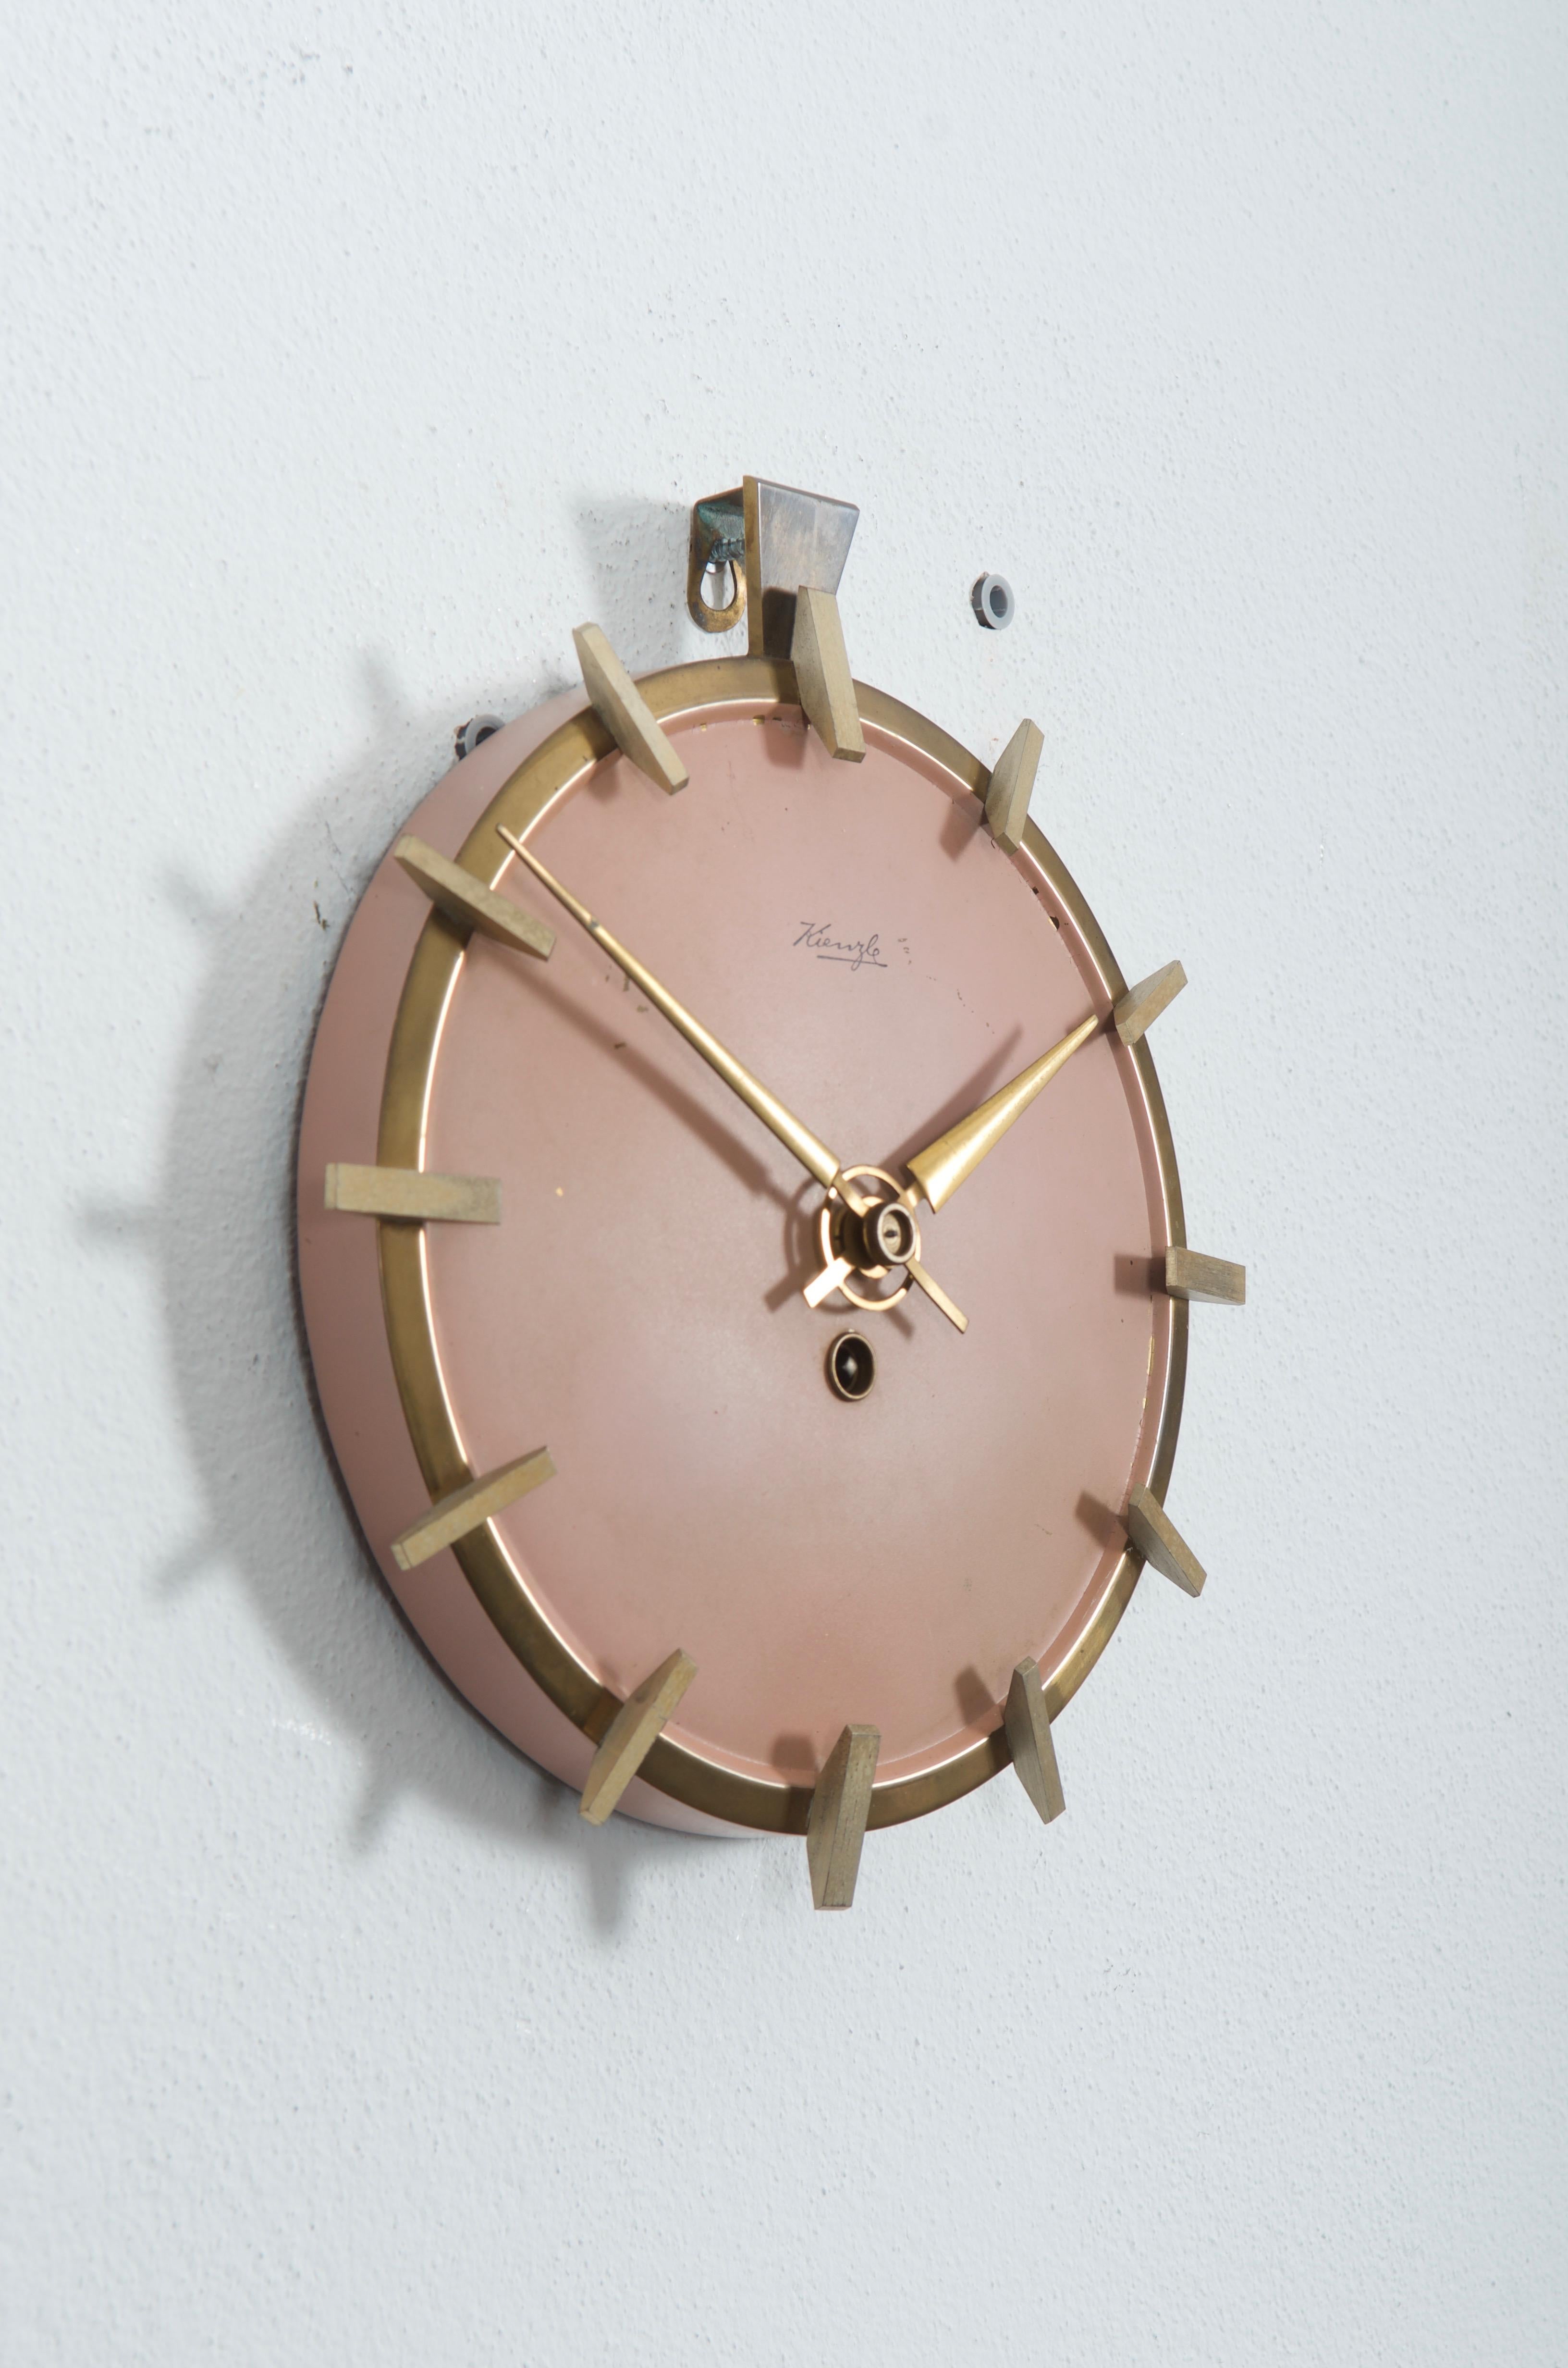 Messingkonstruktion mit altrosa lackiertem Ziffernblatt aus den frühen 1950er Jahren.
Originales mechanisches Uhrwerk, kann aber auf Wunsch gegen ein AAA-Batteriewerk ausgetauscht werden.
Lieferzeit ca. 2-3 Wochen. Einige Kratzer auf dem